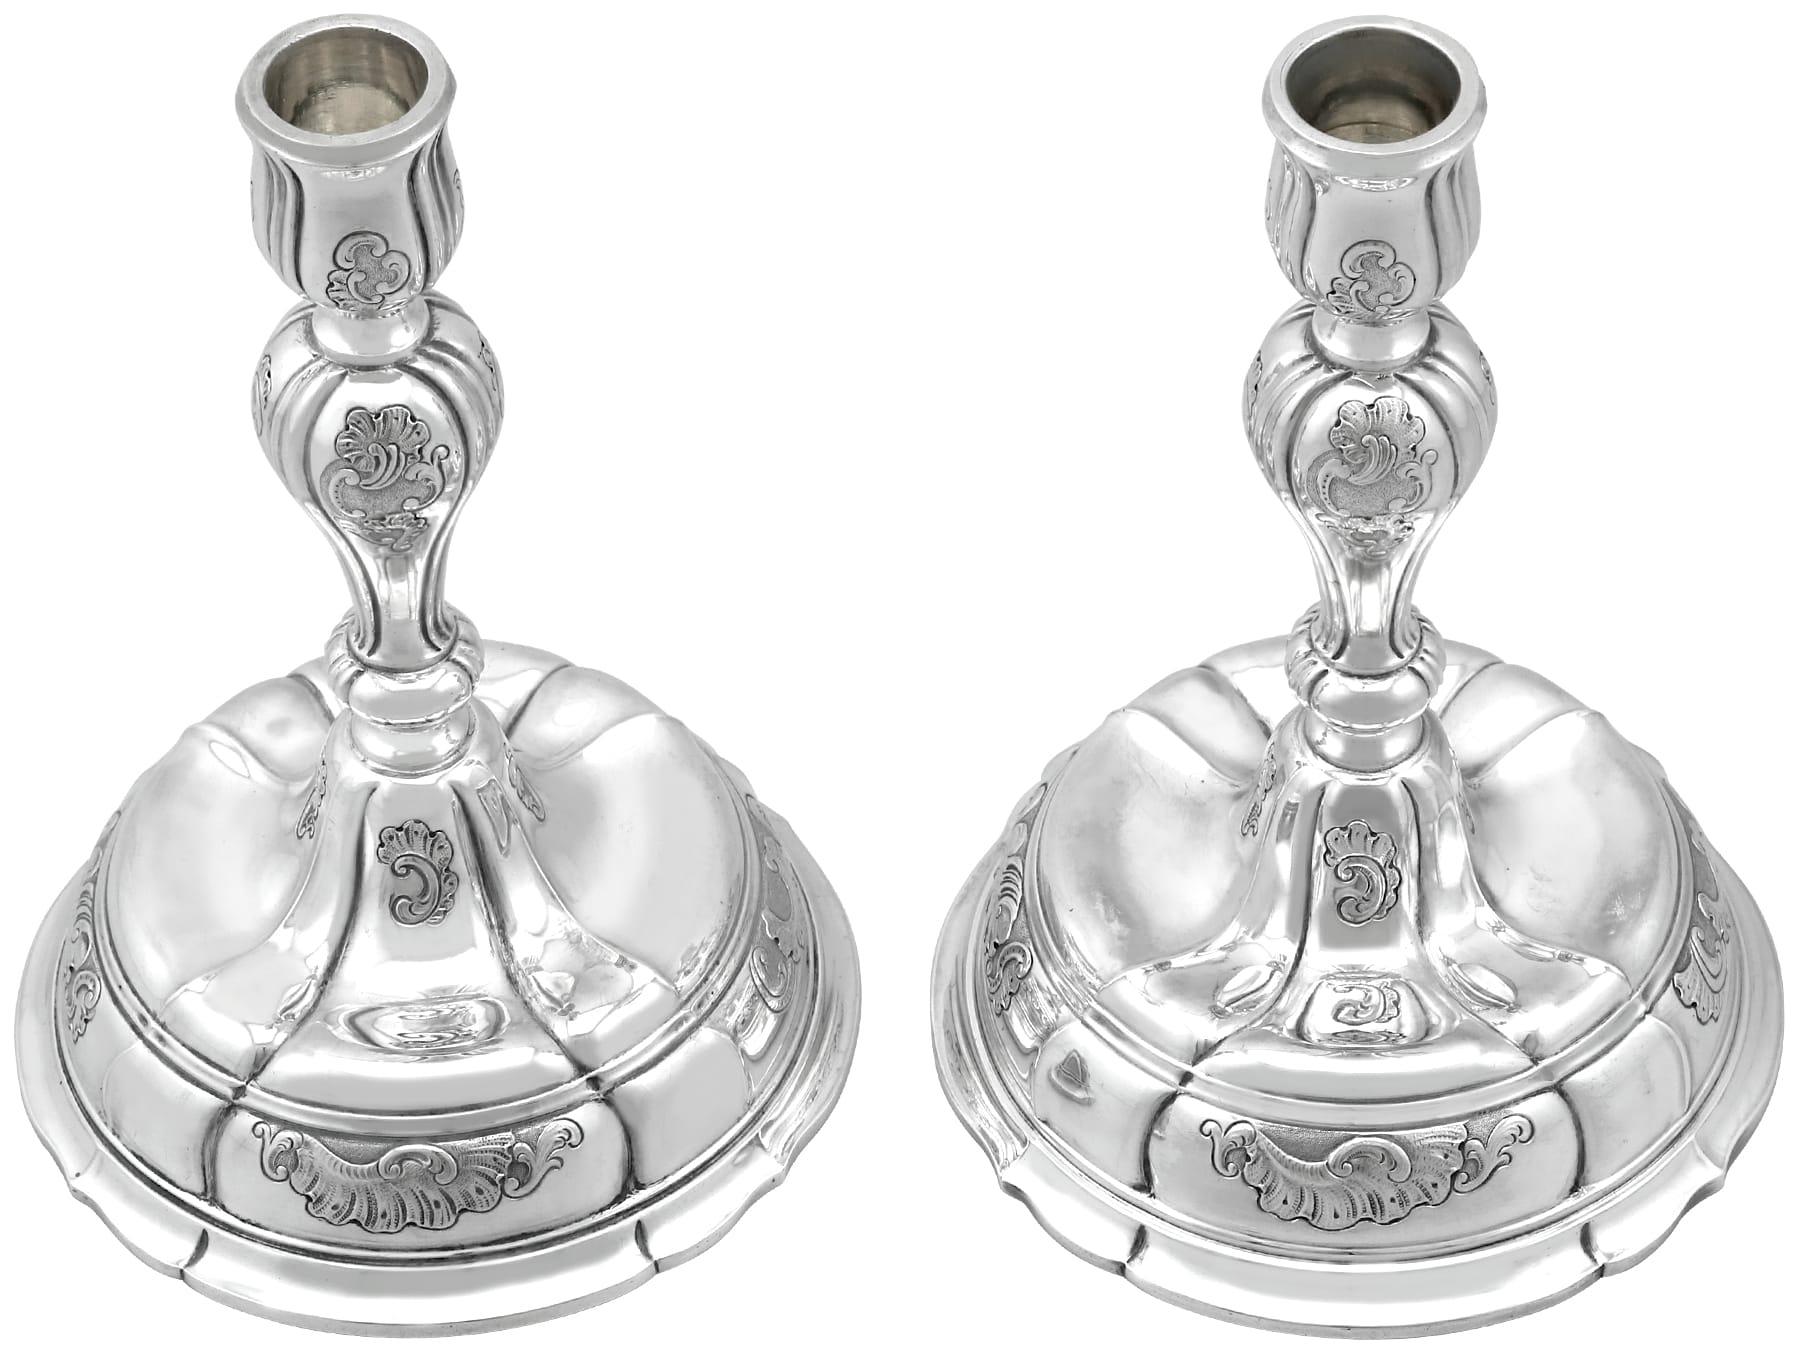 Une paire exceptionnelle, fine et impressionnante de chandeliers anciens en argent danois fabriqués par Georg Jensen ; un ajout à notre collection d'argenterie ornementale.

Ces exceptionnels bougeoirs anciens en argent danois ont une forme